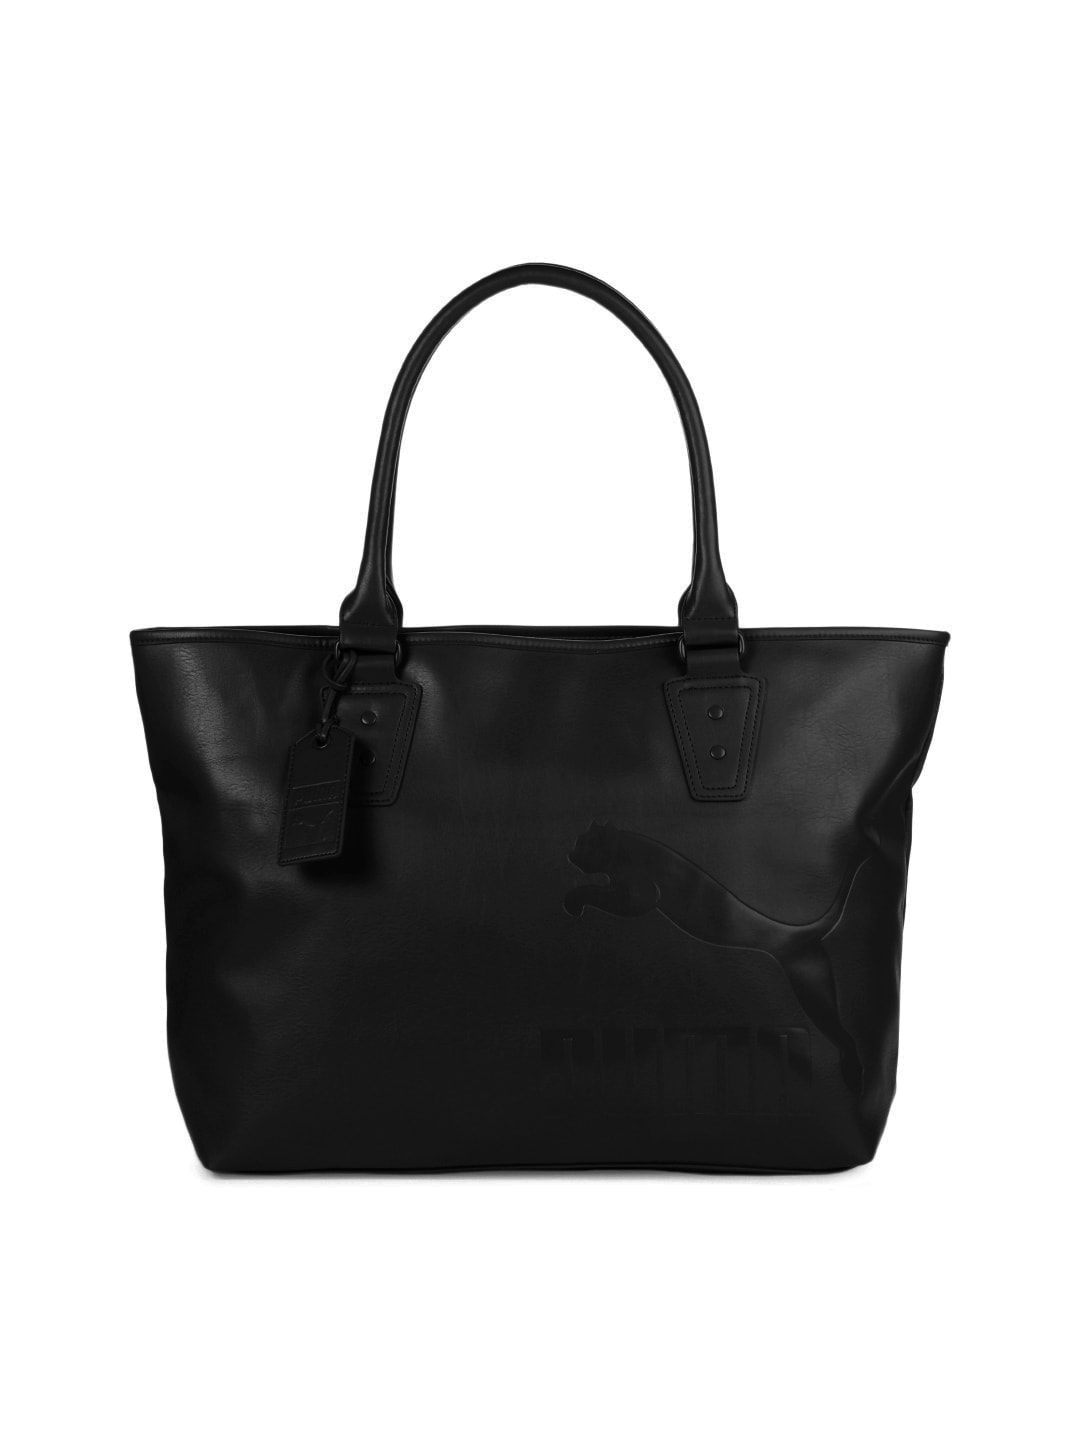 Puma Women Originals Mono Black Handbag